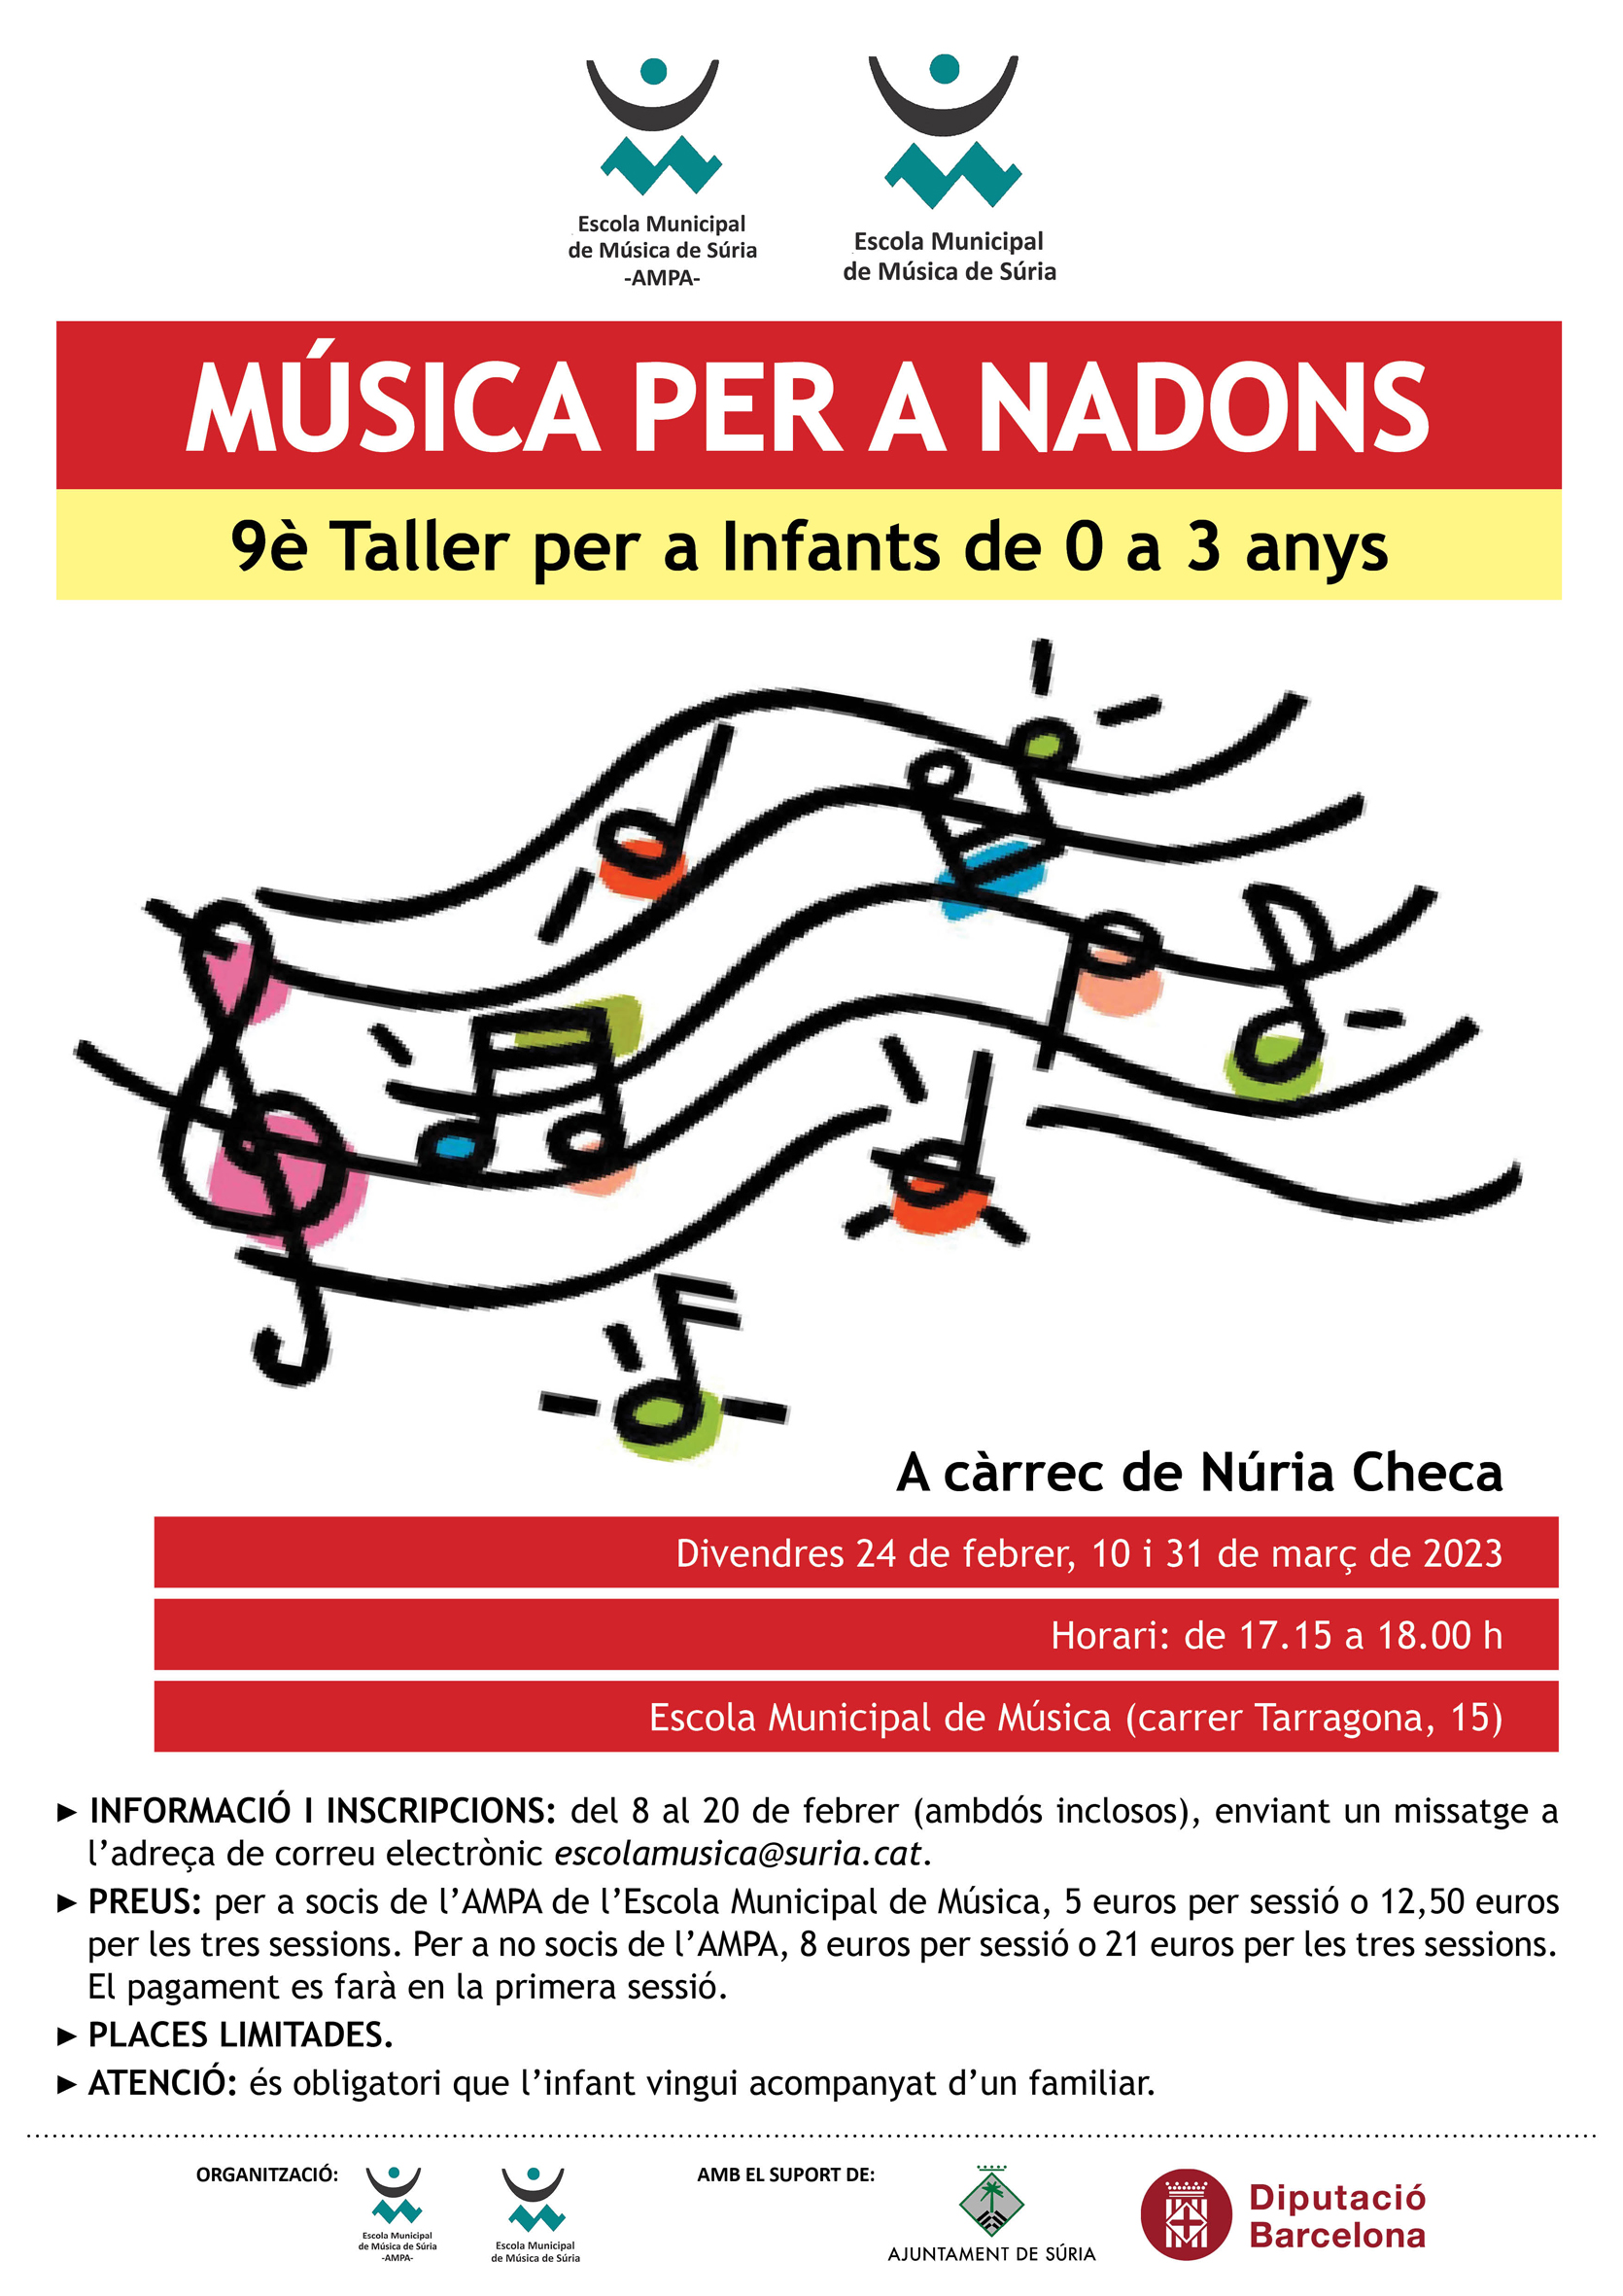 Cartell del Taller de Música per a Nadons, de l'Escola Municipal de Música - Divendres 24 de febrer, 10 i 31 de març.